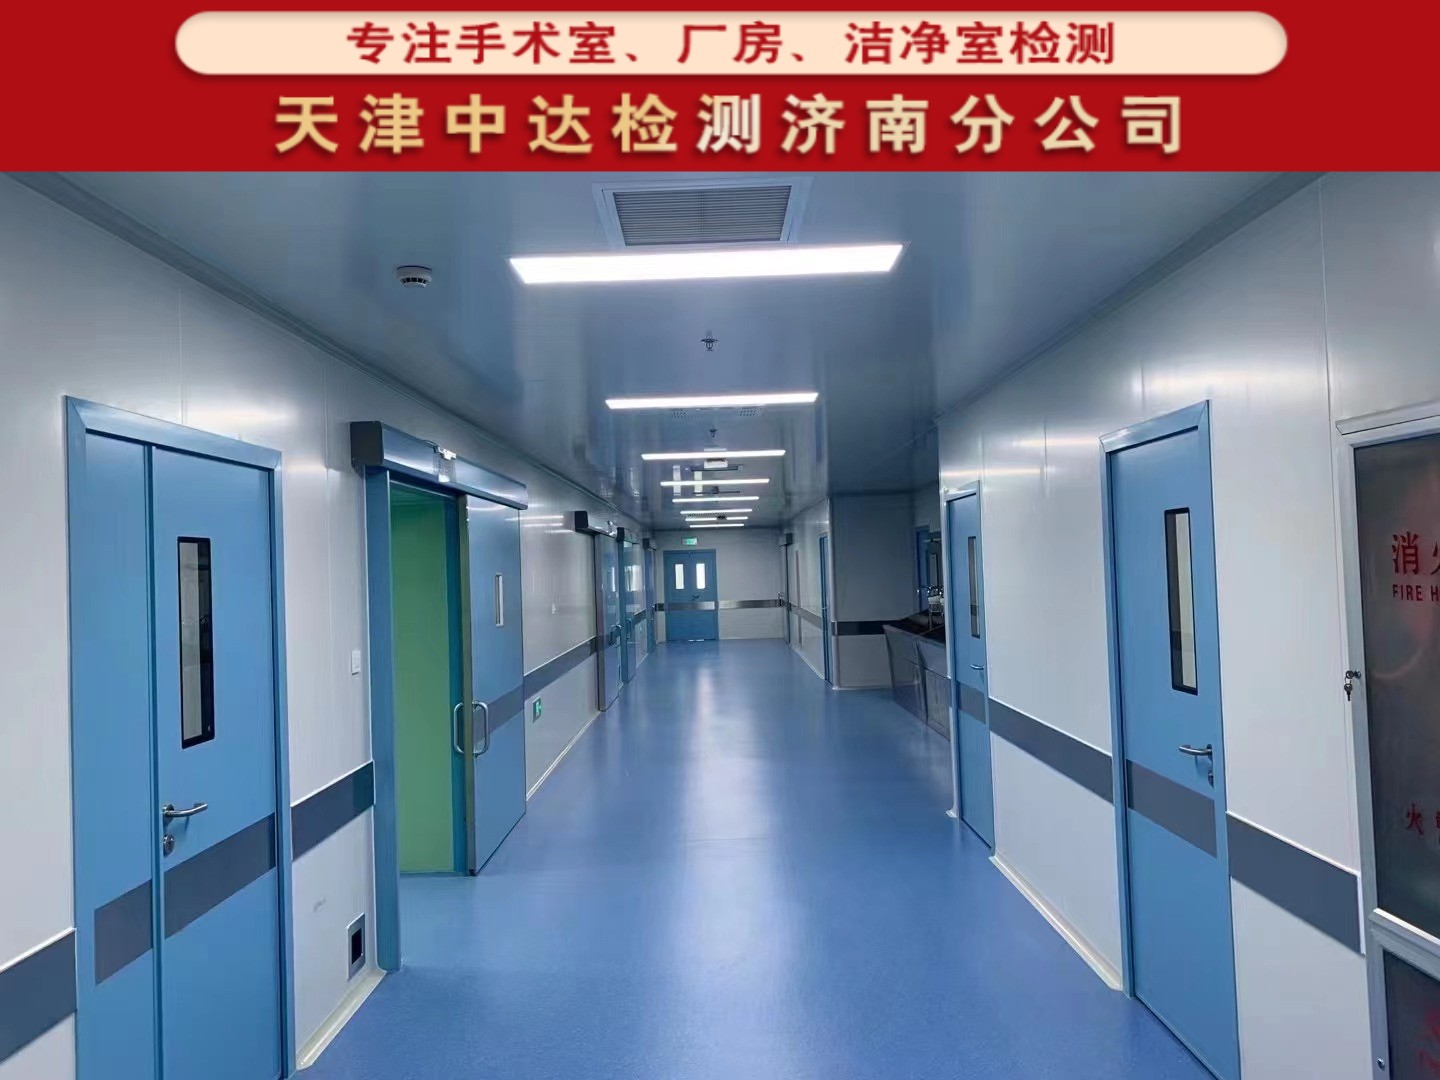 日照莒县正规手术室空气质量检测公司-天津中达检测济南分公司